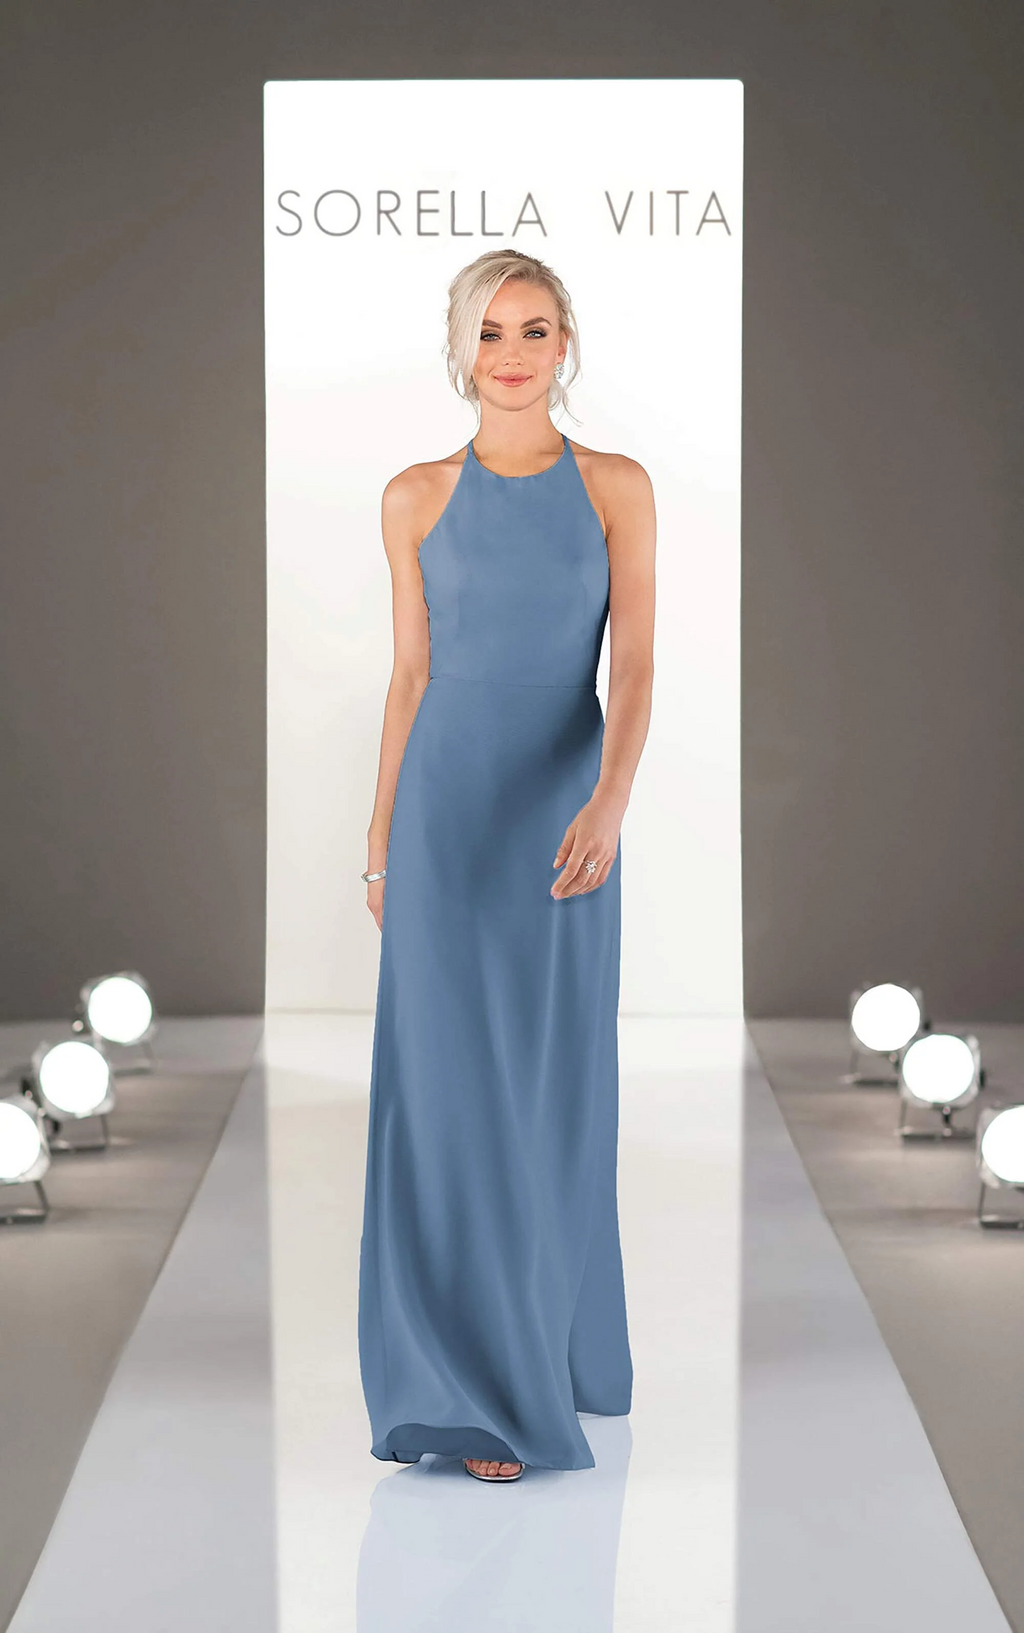 Sorella Vita Dress Style 9234 (Bluestone-Size 10) Prom, Ball., Black-tie, Bridesmaid, Pageant